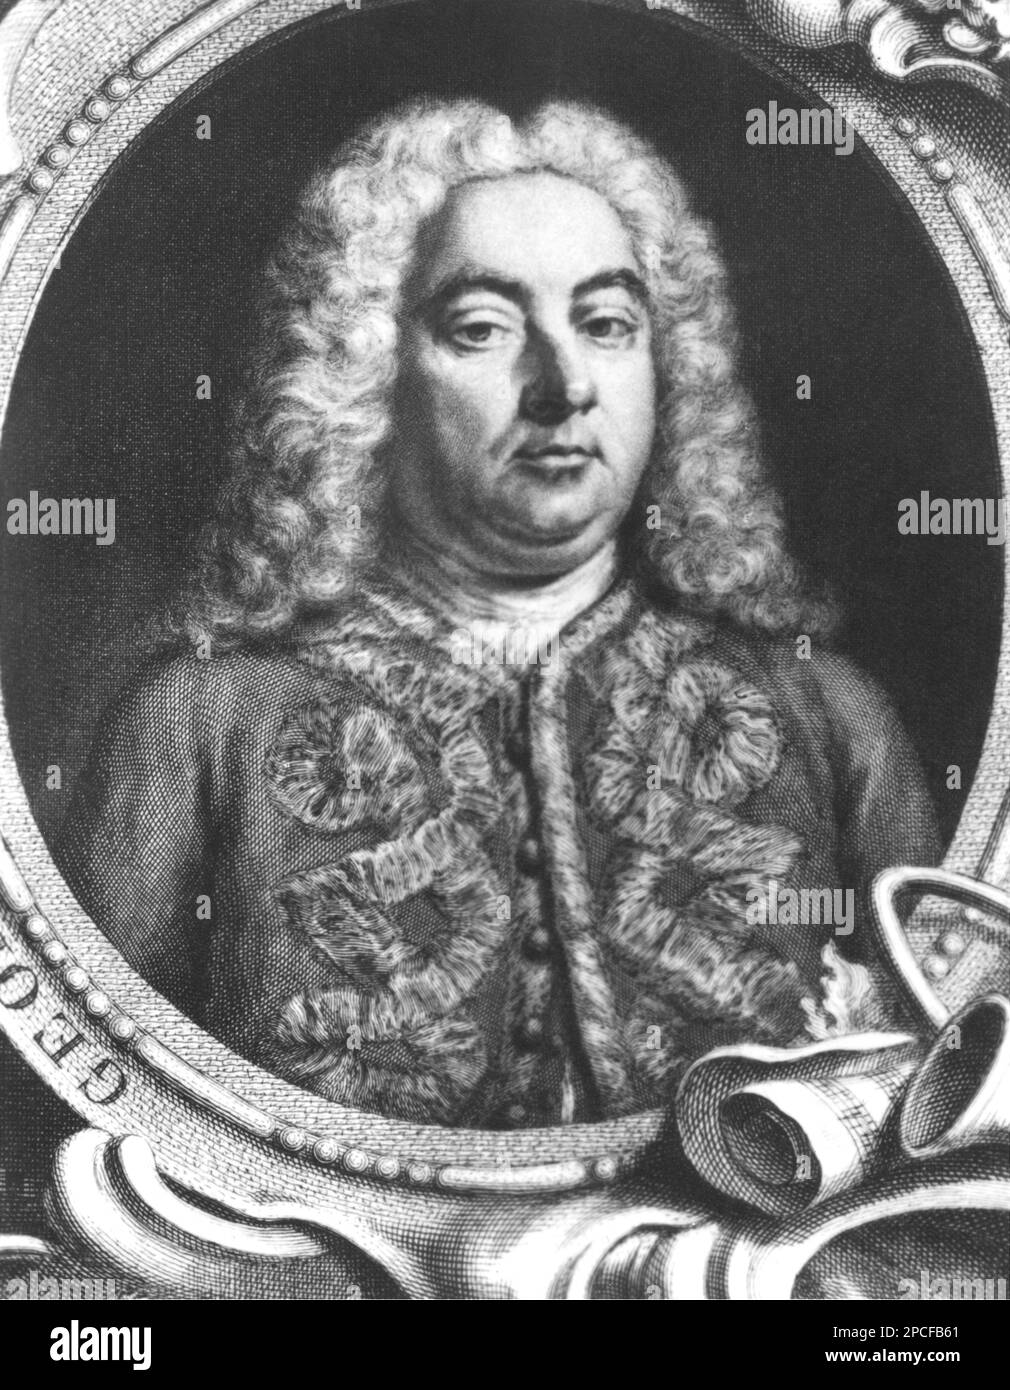 Le célèbre compositeur allemand de musique baroque HANDEL , paintingporrait de Balthasar Denner ( 1727 ) . George Frideric Handel ( Halle 1685 - 1759 ) était célèbre pour ses opéras, oratorios et concerti grossi . - MUSICA CLASSICA - CLASSIQUE - COMPOSITORE - MUSICISTA - portrait - ritrato - perruque - parrucca - jabot - BAROCCO - BAROCCA - FOTO STORICA STORICHE - HISTOIRE PHIOTO - incisione - gravure - Giorgio Federico - OPÉRA ---- Archivio GBB Banque D'Images